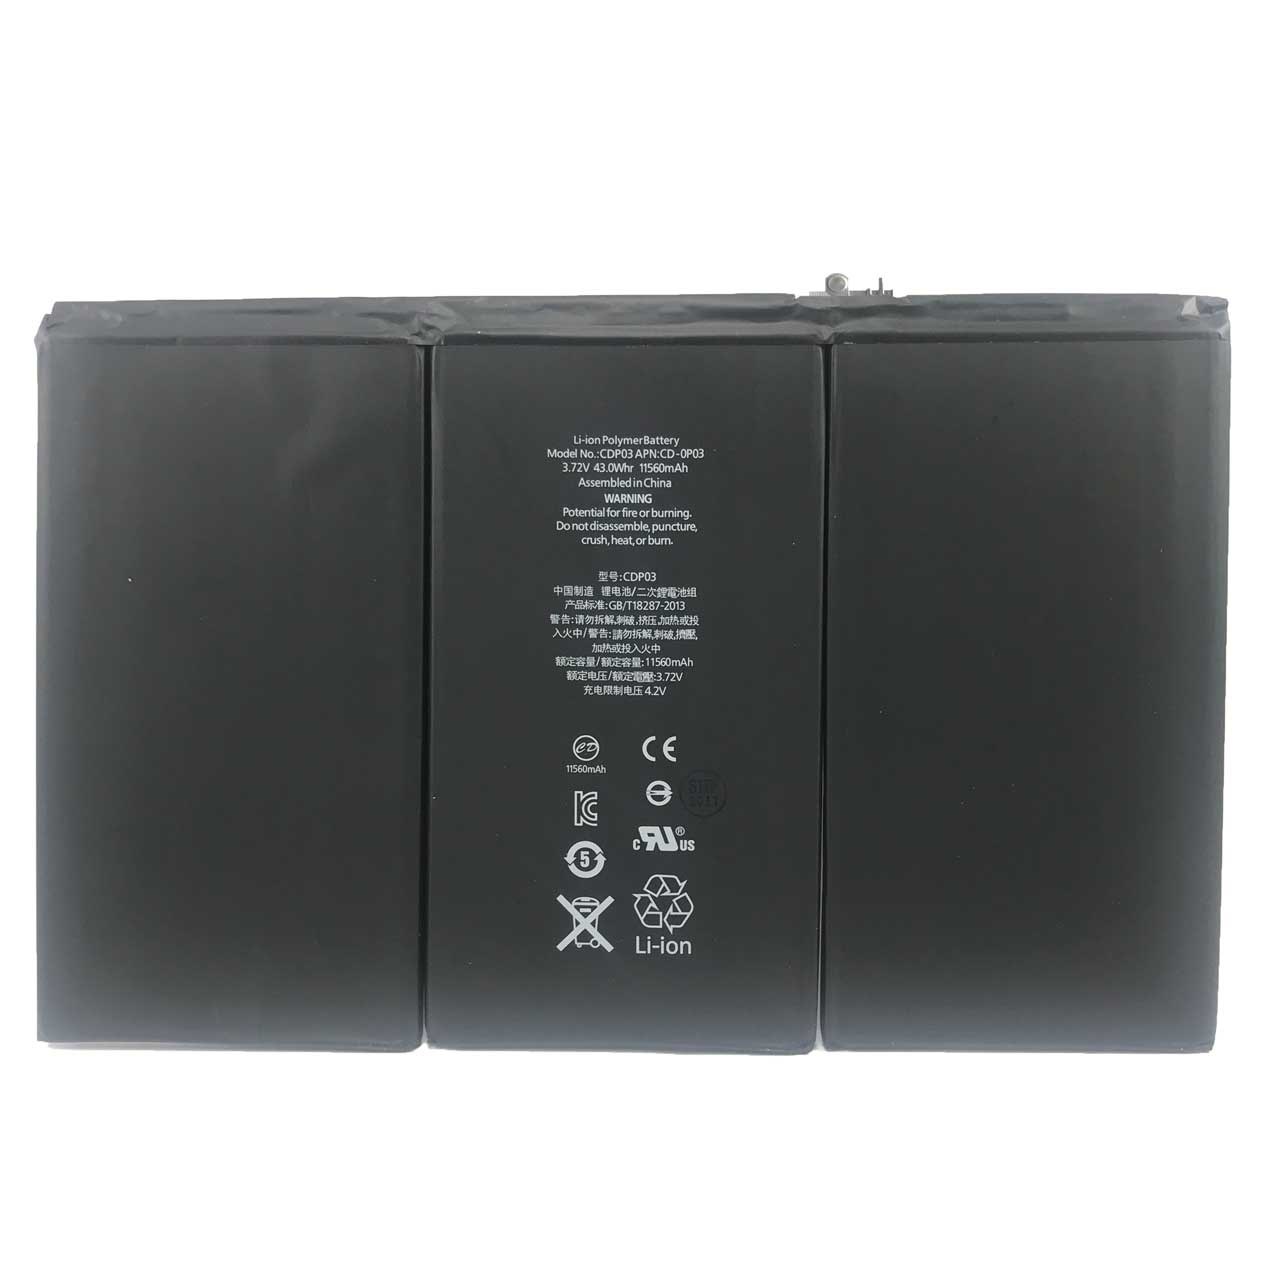 باتری تبلت  مدل CDP03 با ظرفیت 11560 mAh مناسب برای IPAD 3